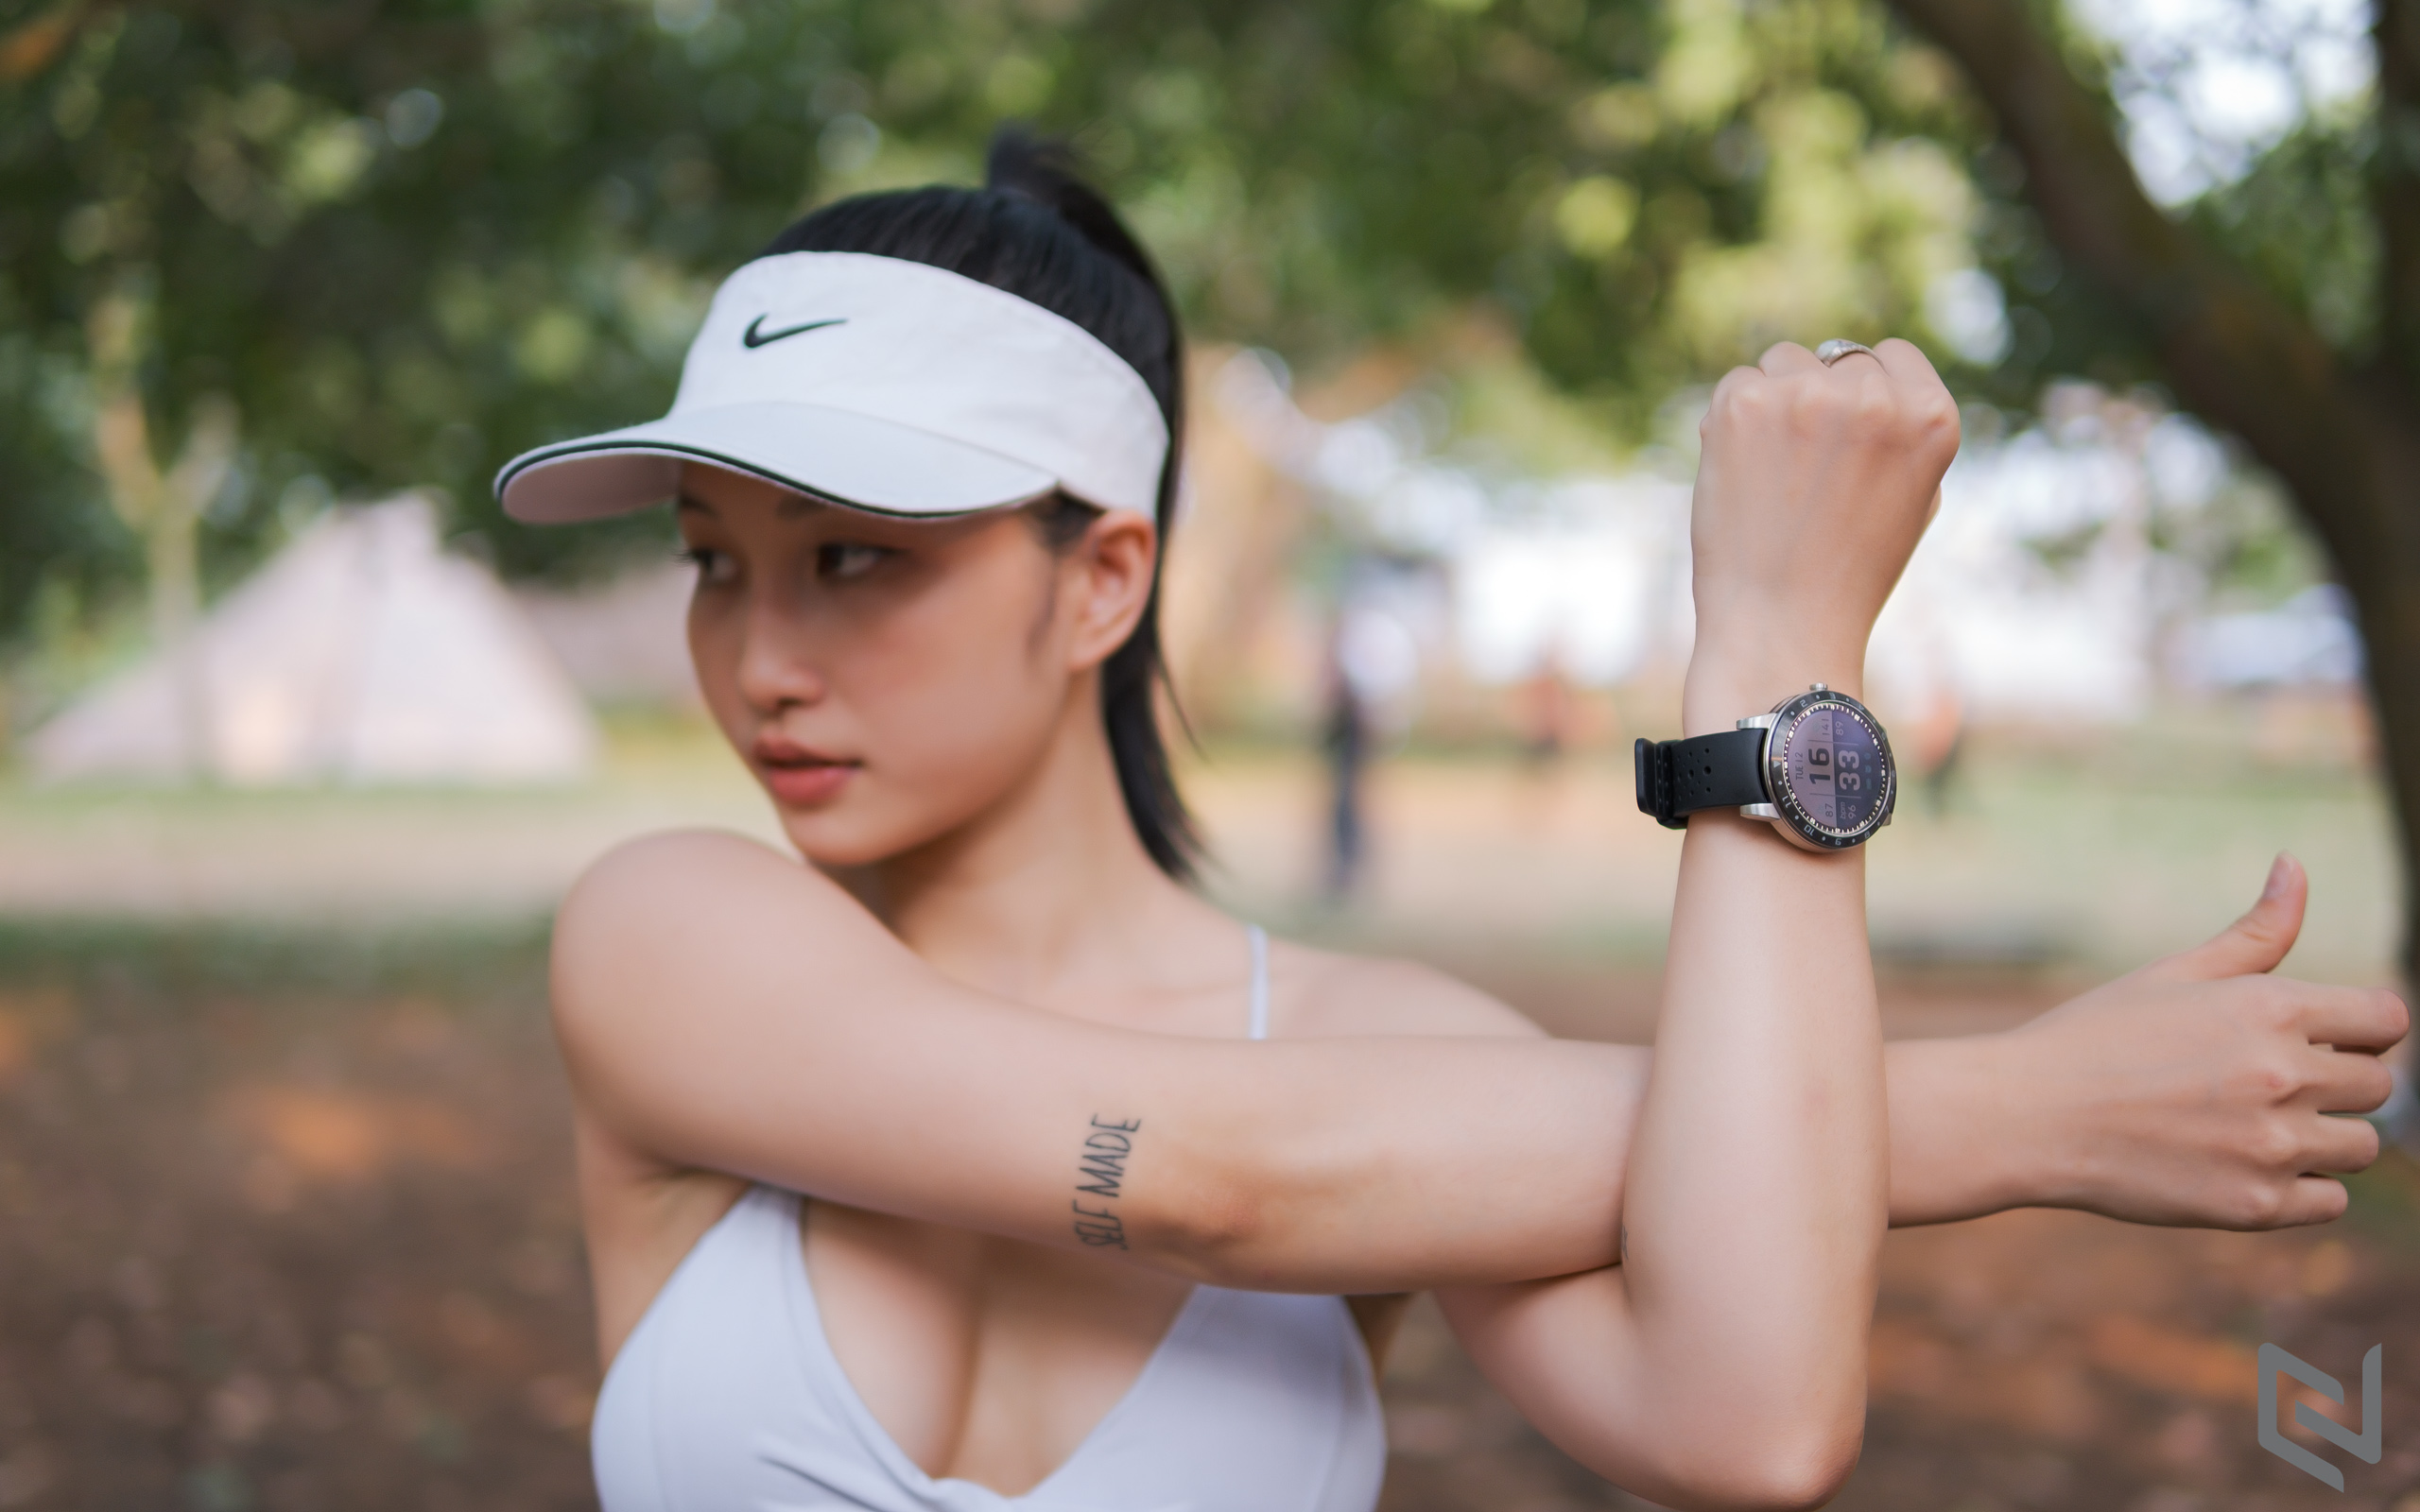 ASUS giới thiệu smartwatch VivoWatch 5, đồng hồ đeo tay đo được huyết áp